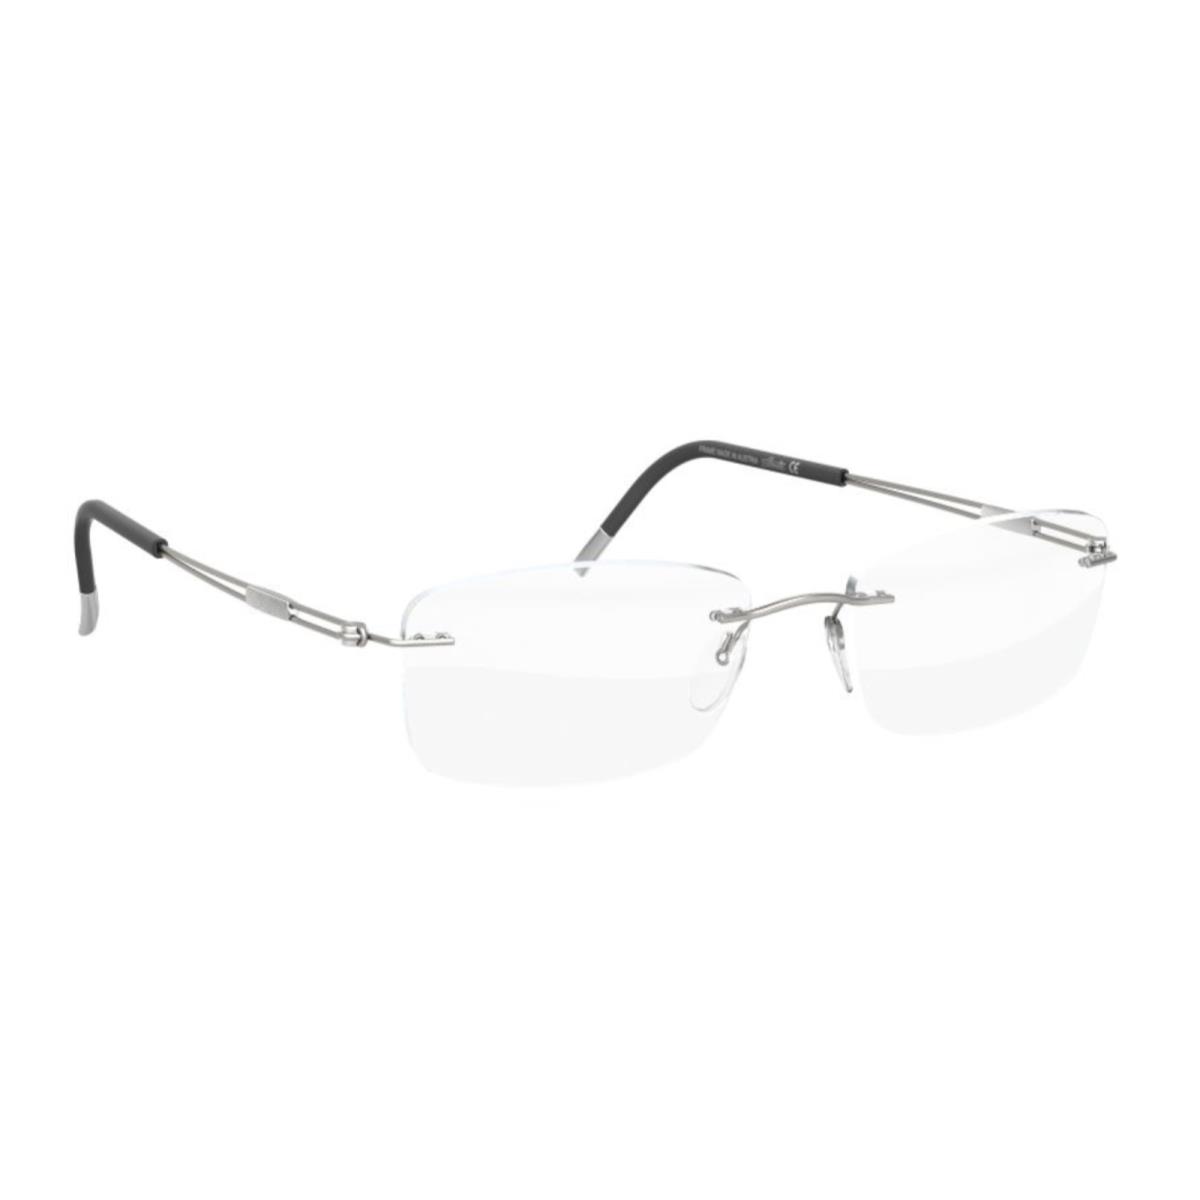 Silhouette Eyeglasses 5521 EW 7010 Titan Next Generation Silver Titanium Frames